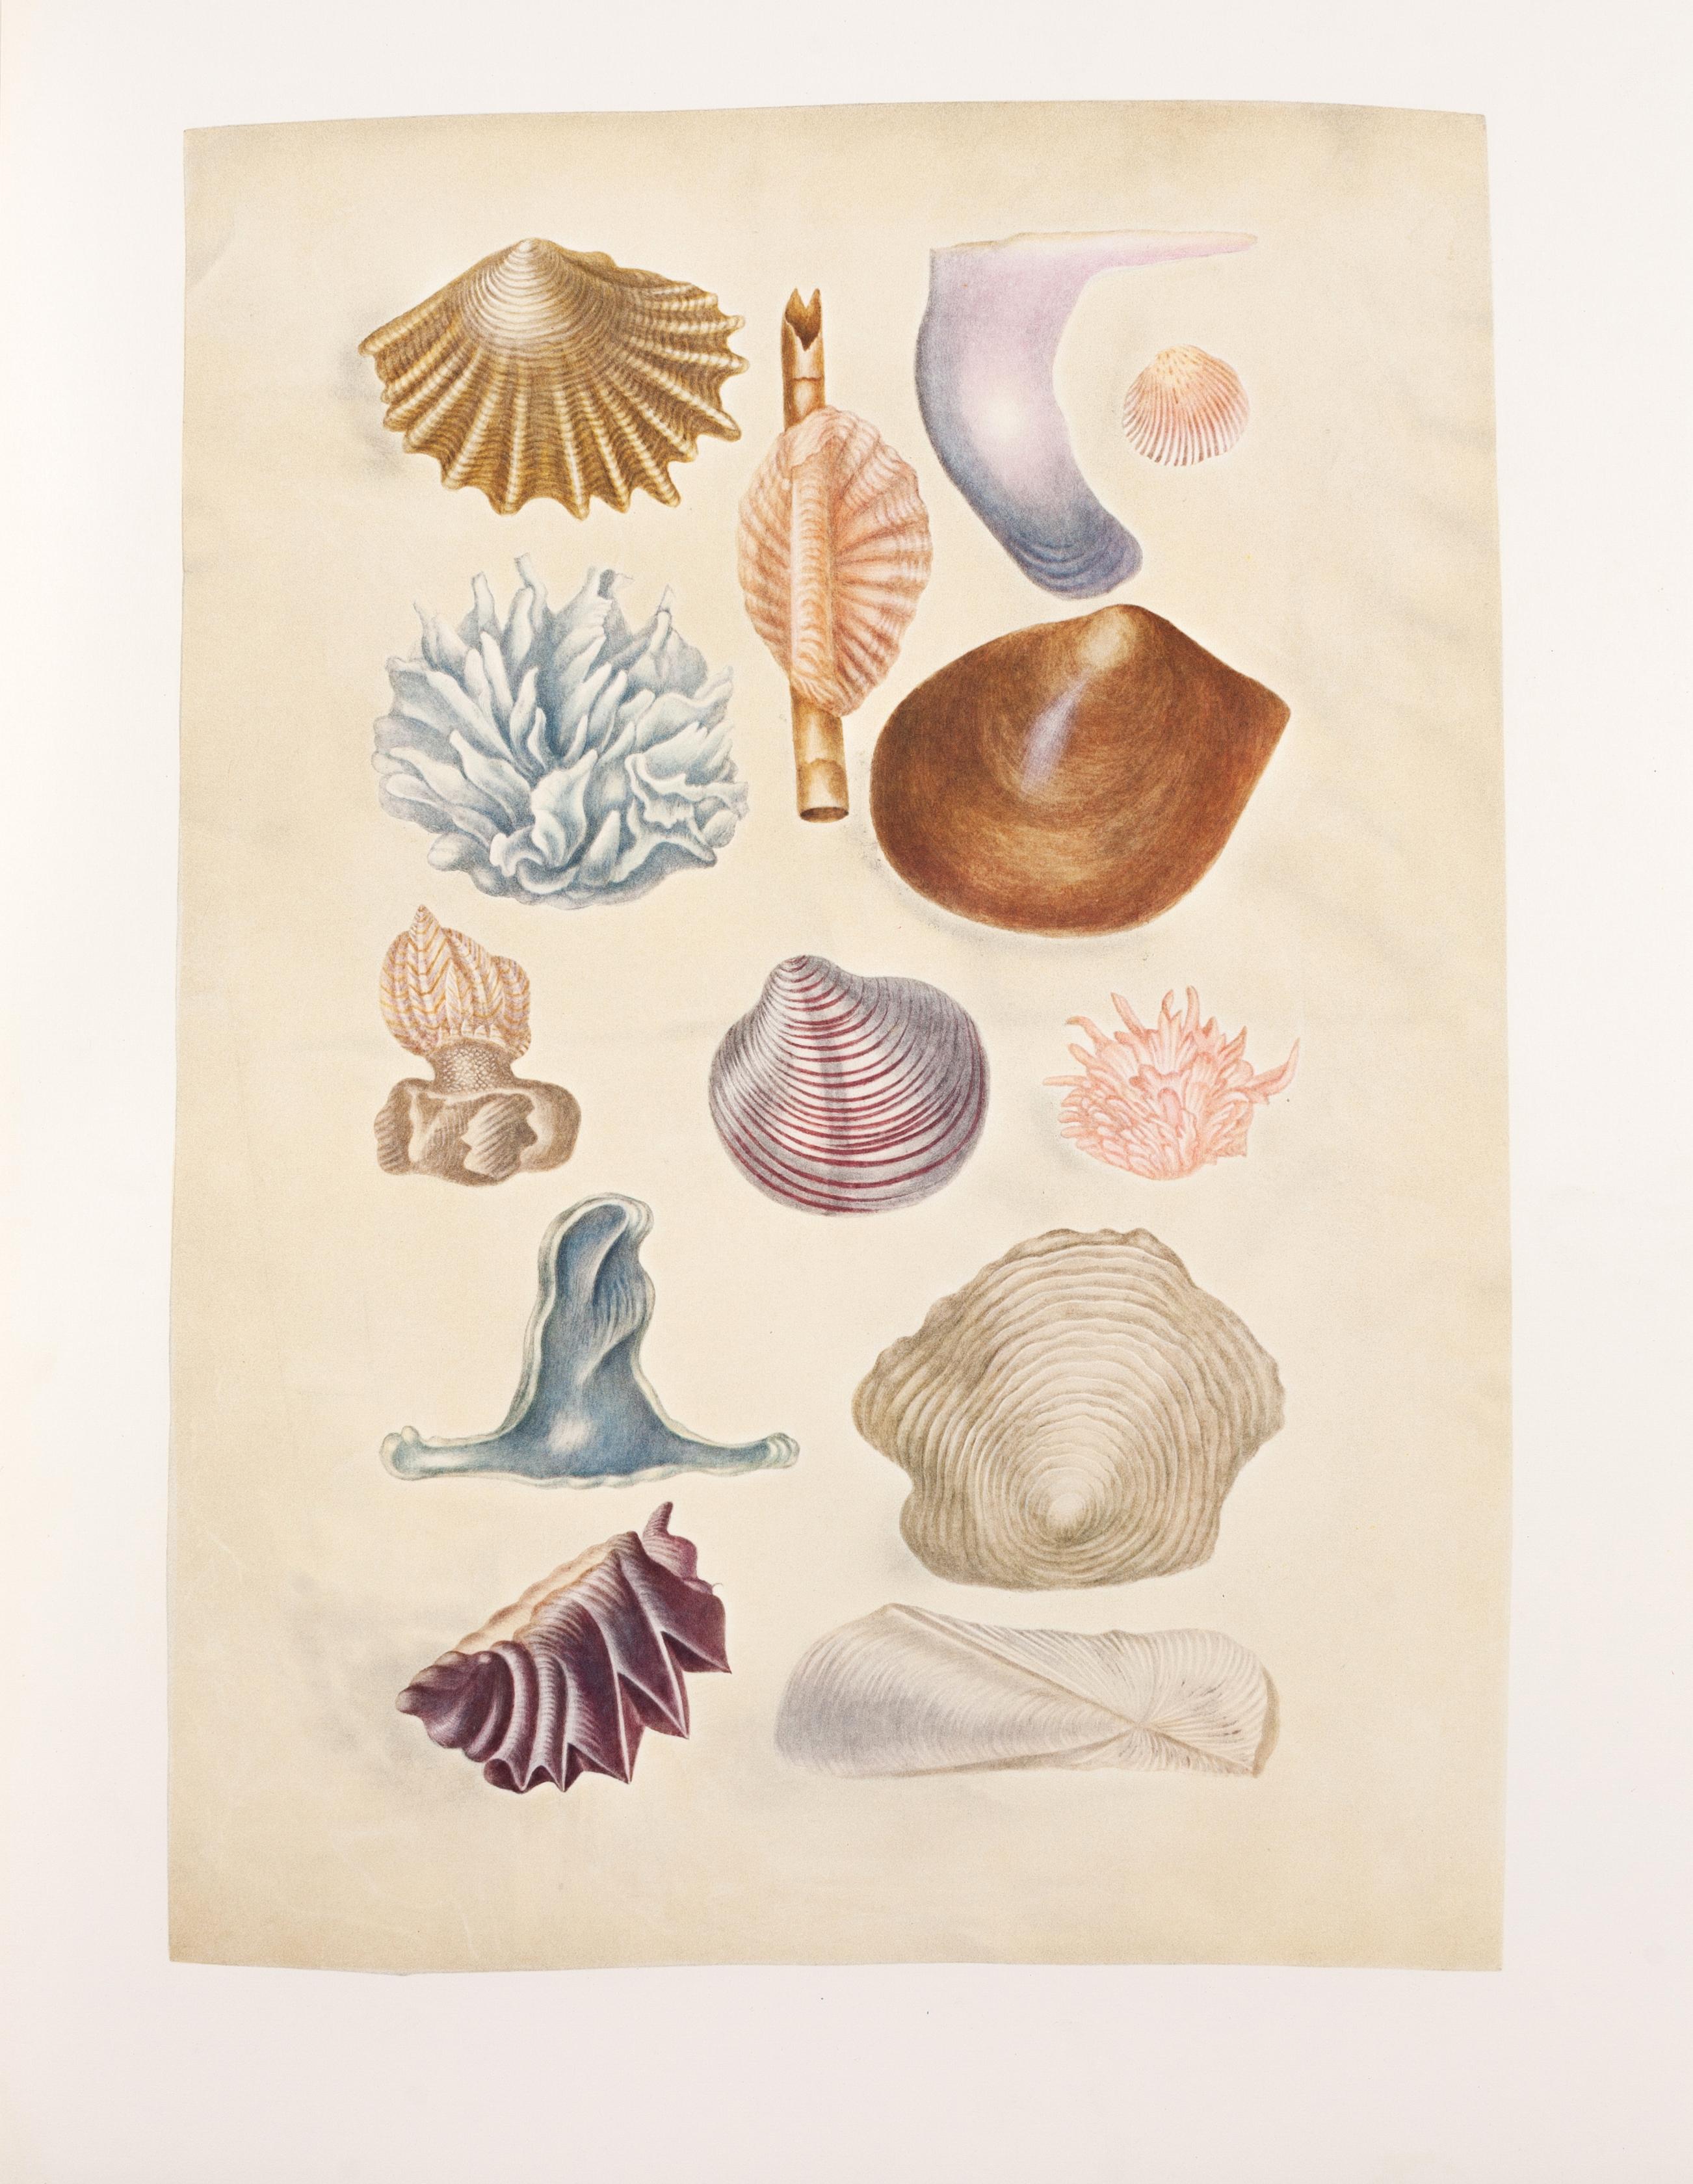 20. Curious shells - Print by Maria Sybilla Merian